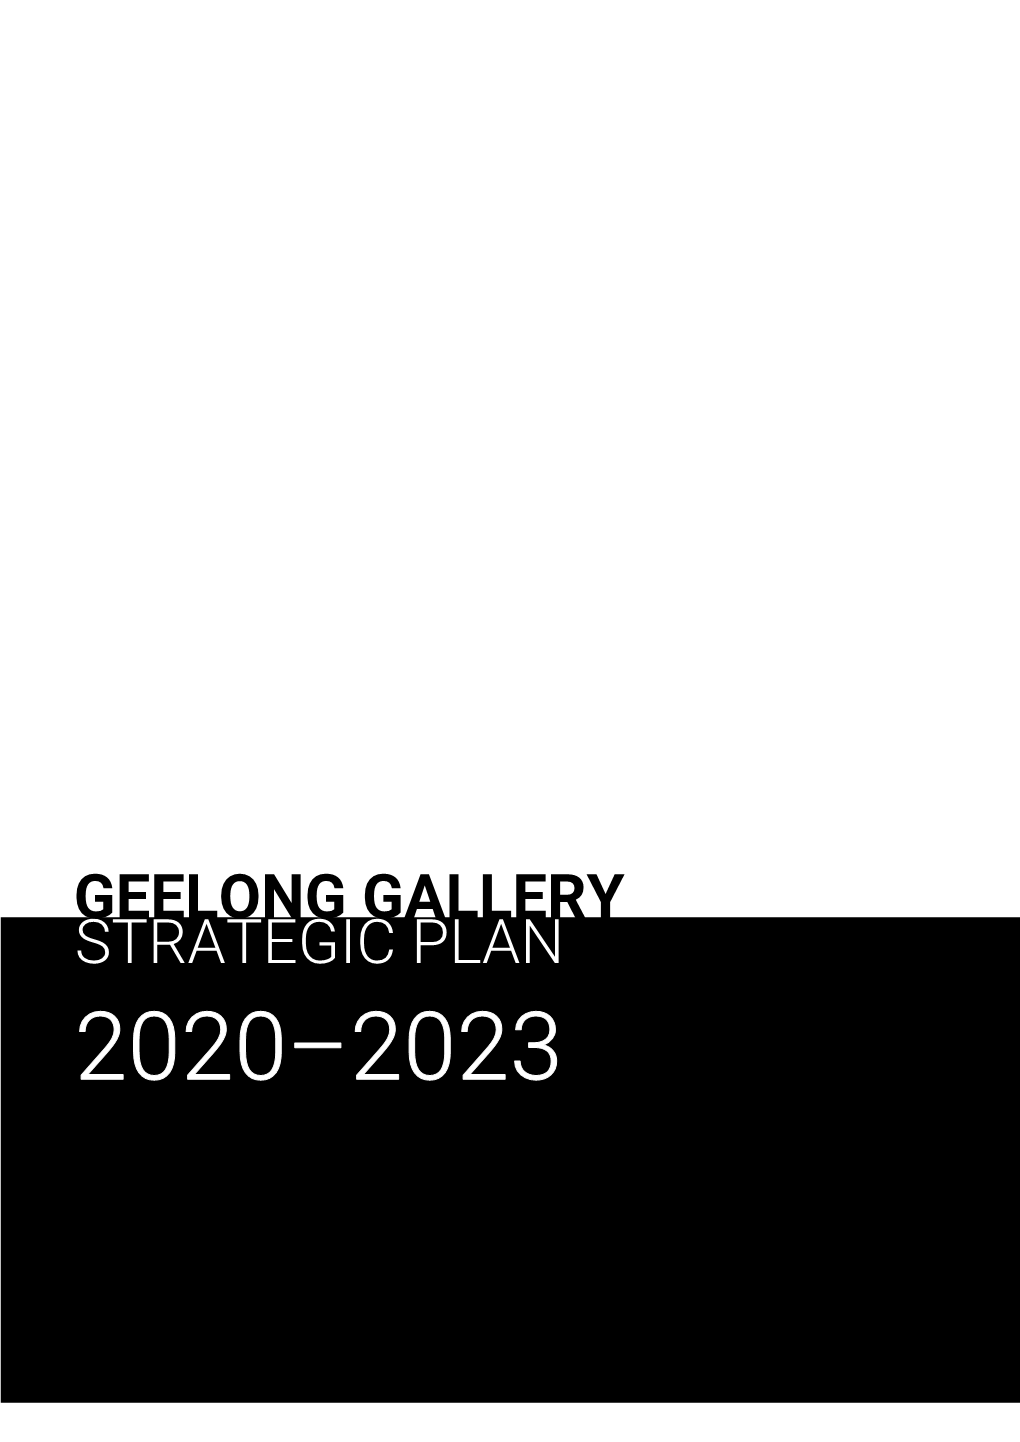 Strategic Plan Geelong Gallery